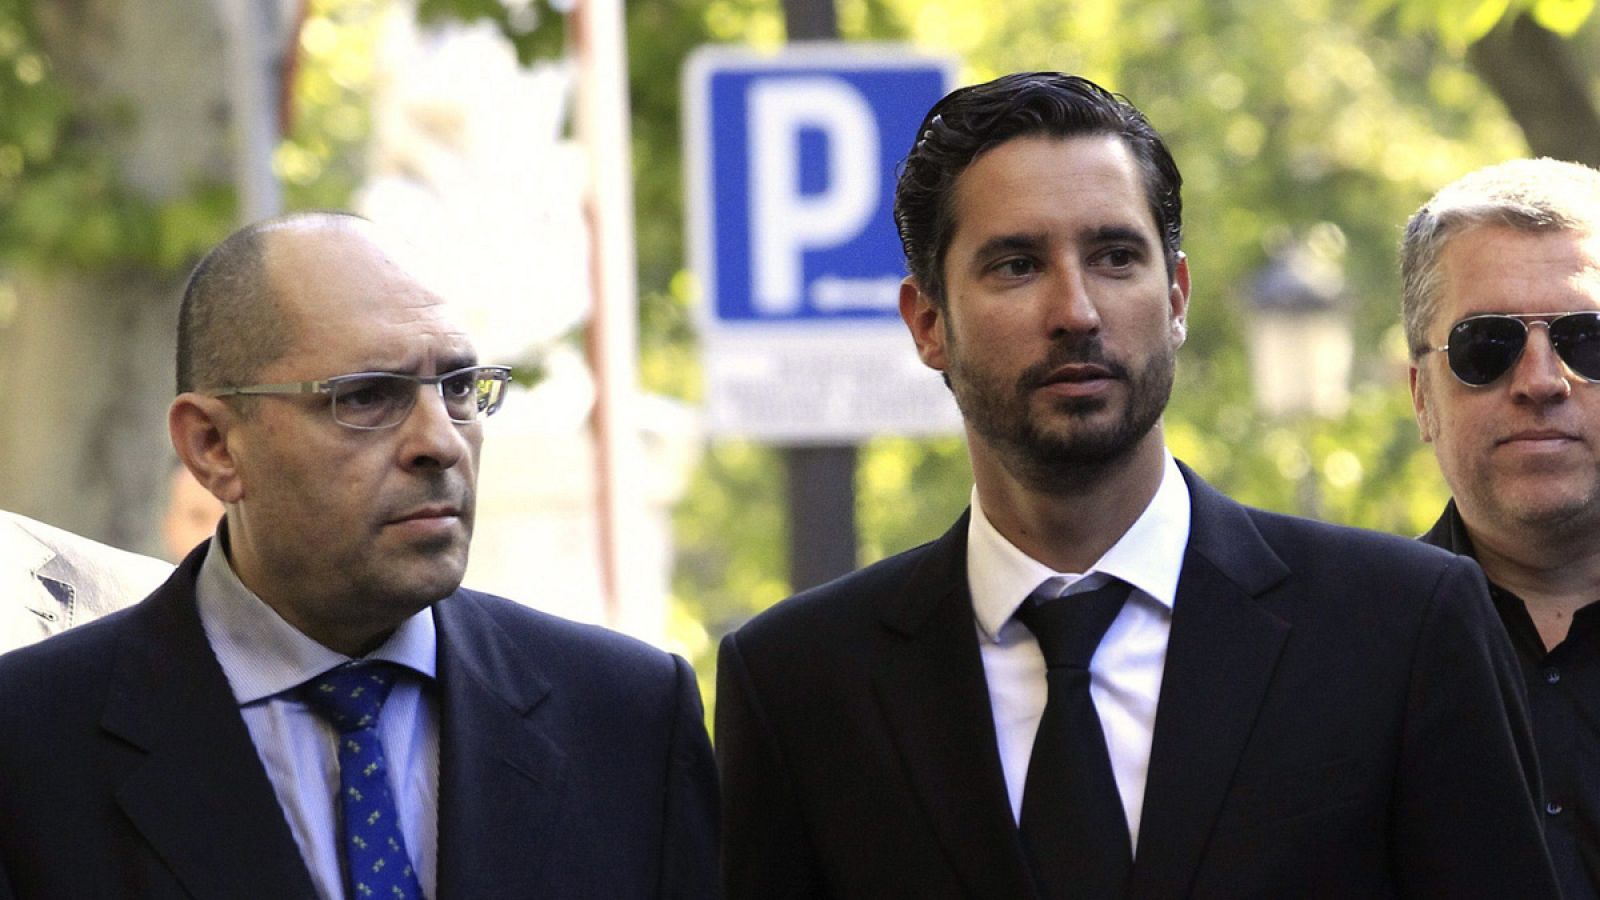 Foto de archivo del abogado Cándido Conde Pumpido (derecha) junto al juez Elpidio Silva (izquierda)